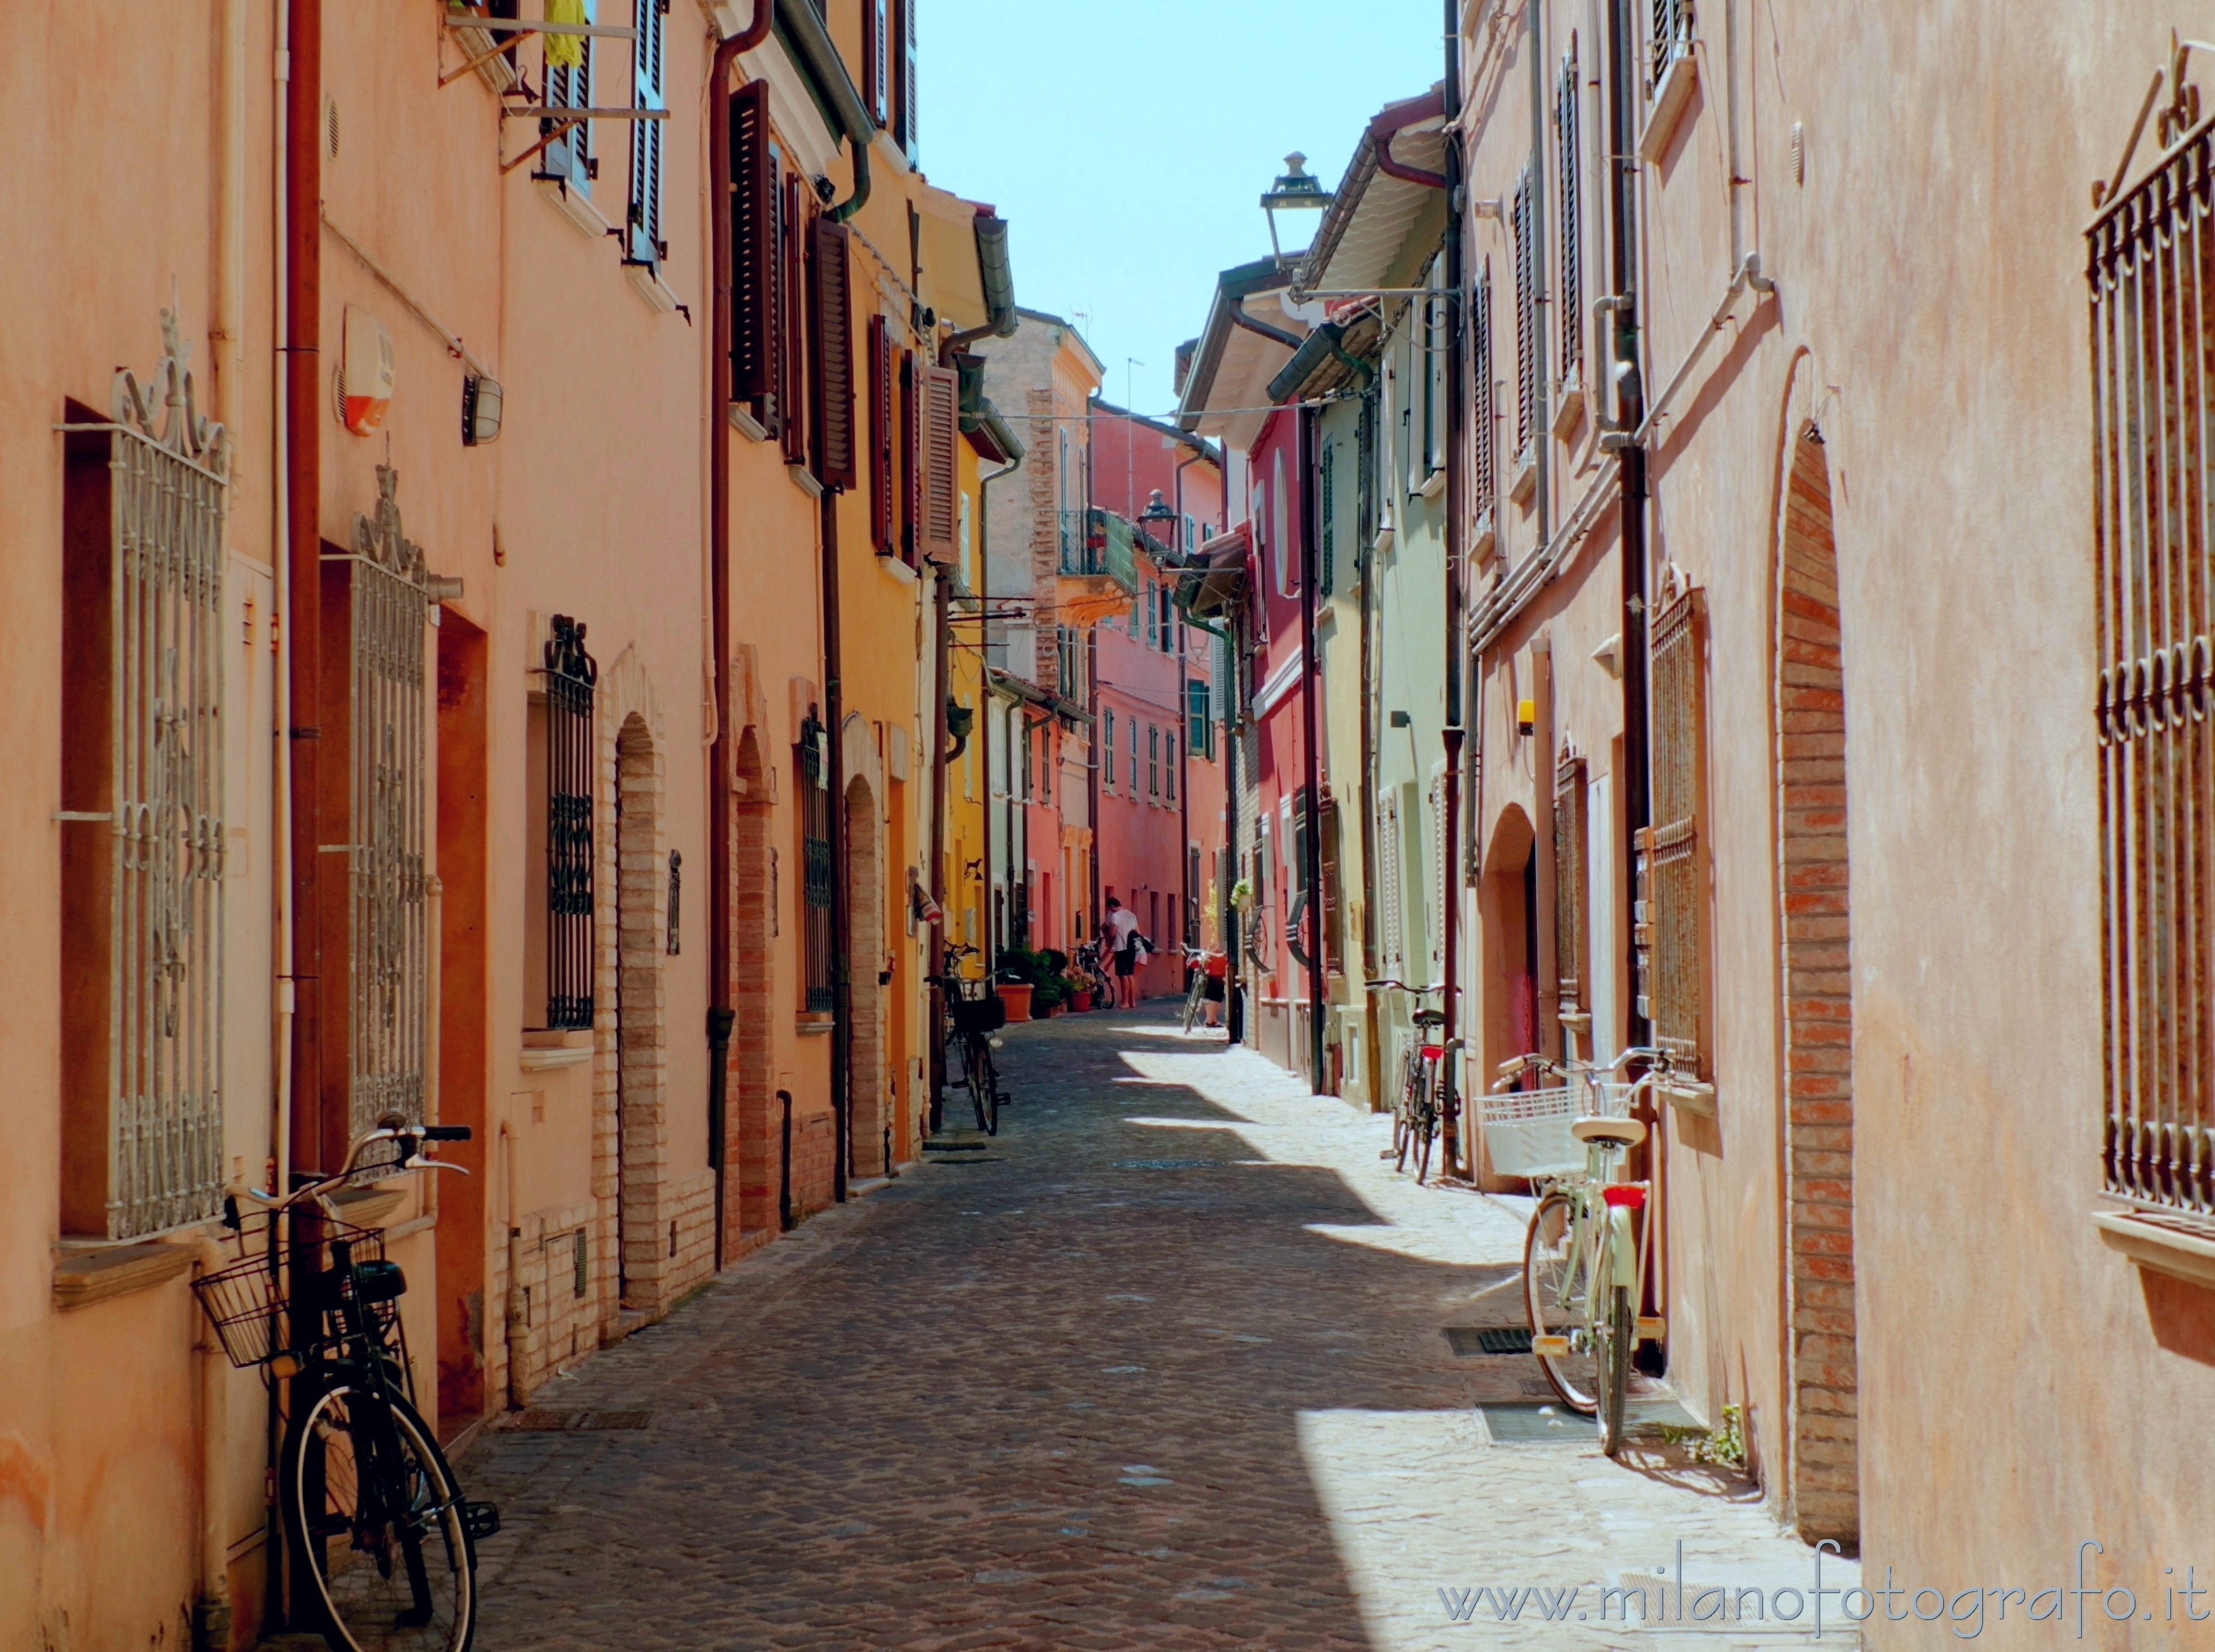 Fano (Pesaro e Urbino, Italy): Street of the old city centrer of Fano - Fano (Pesaro e Urbino, Italy)